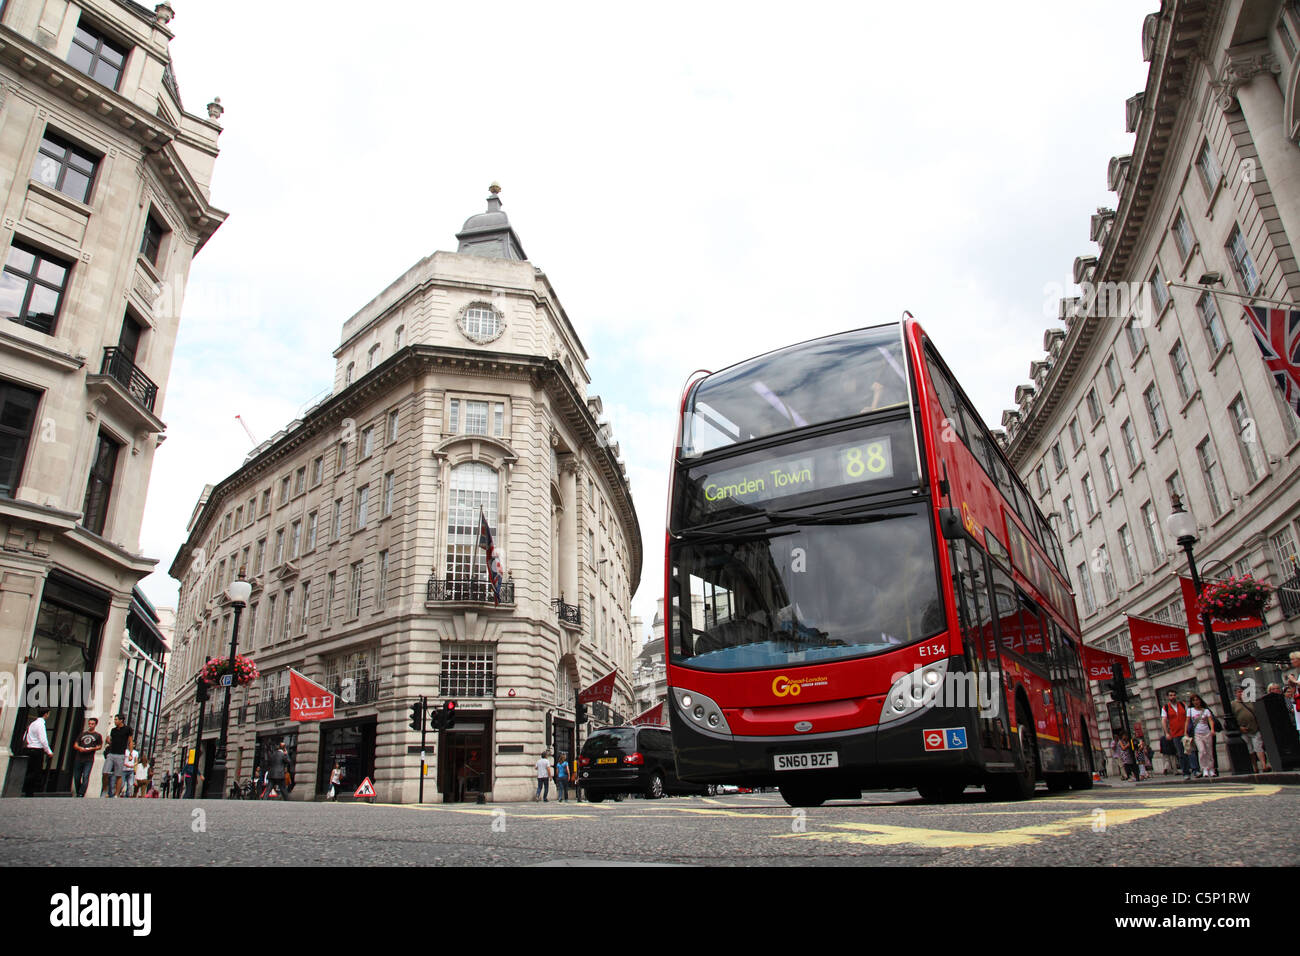 Un bus de Londres rouge sur Regent Street, Londres, Angleterre, Royaume-Uni Banque D'Images